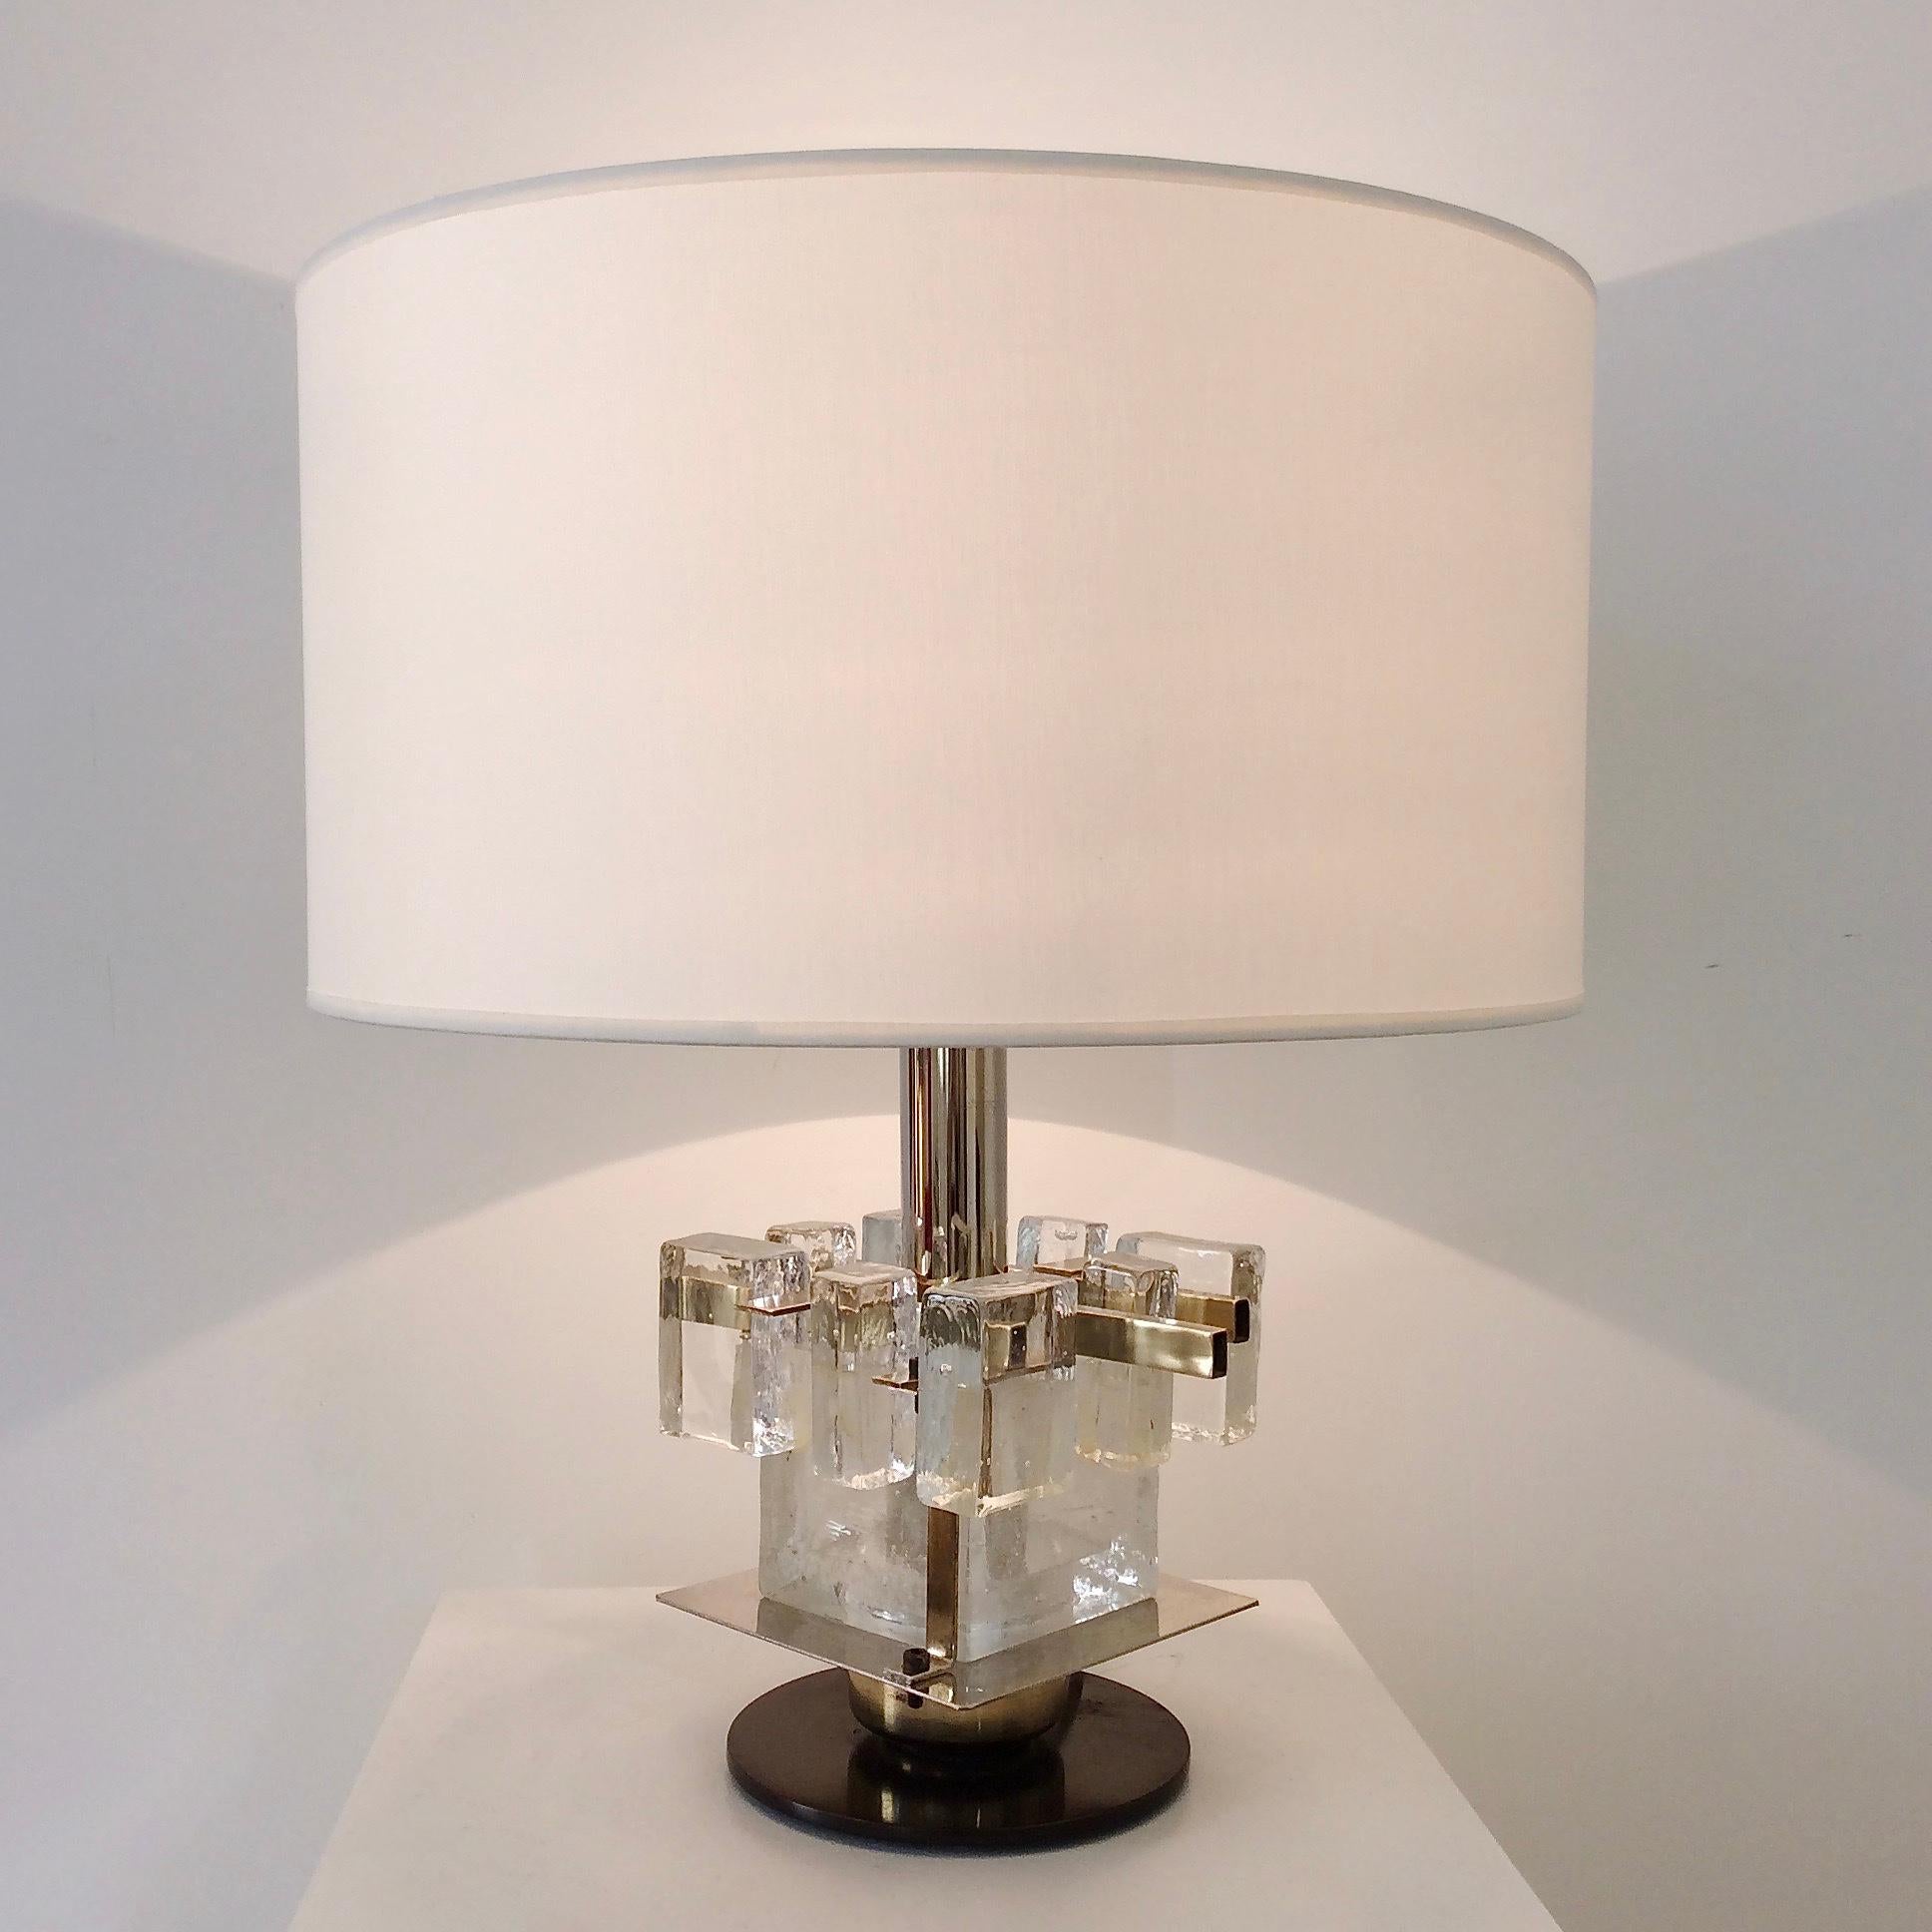 Lampe de table en verre de Murano, attribuée à Poliarte, vers 1960, Italie.
Formes en verre de Murano, laiton, métal patiné, acier chromé, nouvel abat-jour en tissu.
Une ampoule E14
Dimensions : Hauteur totale : 40 cm, diamètre de l'abat-jour : 34